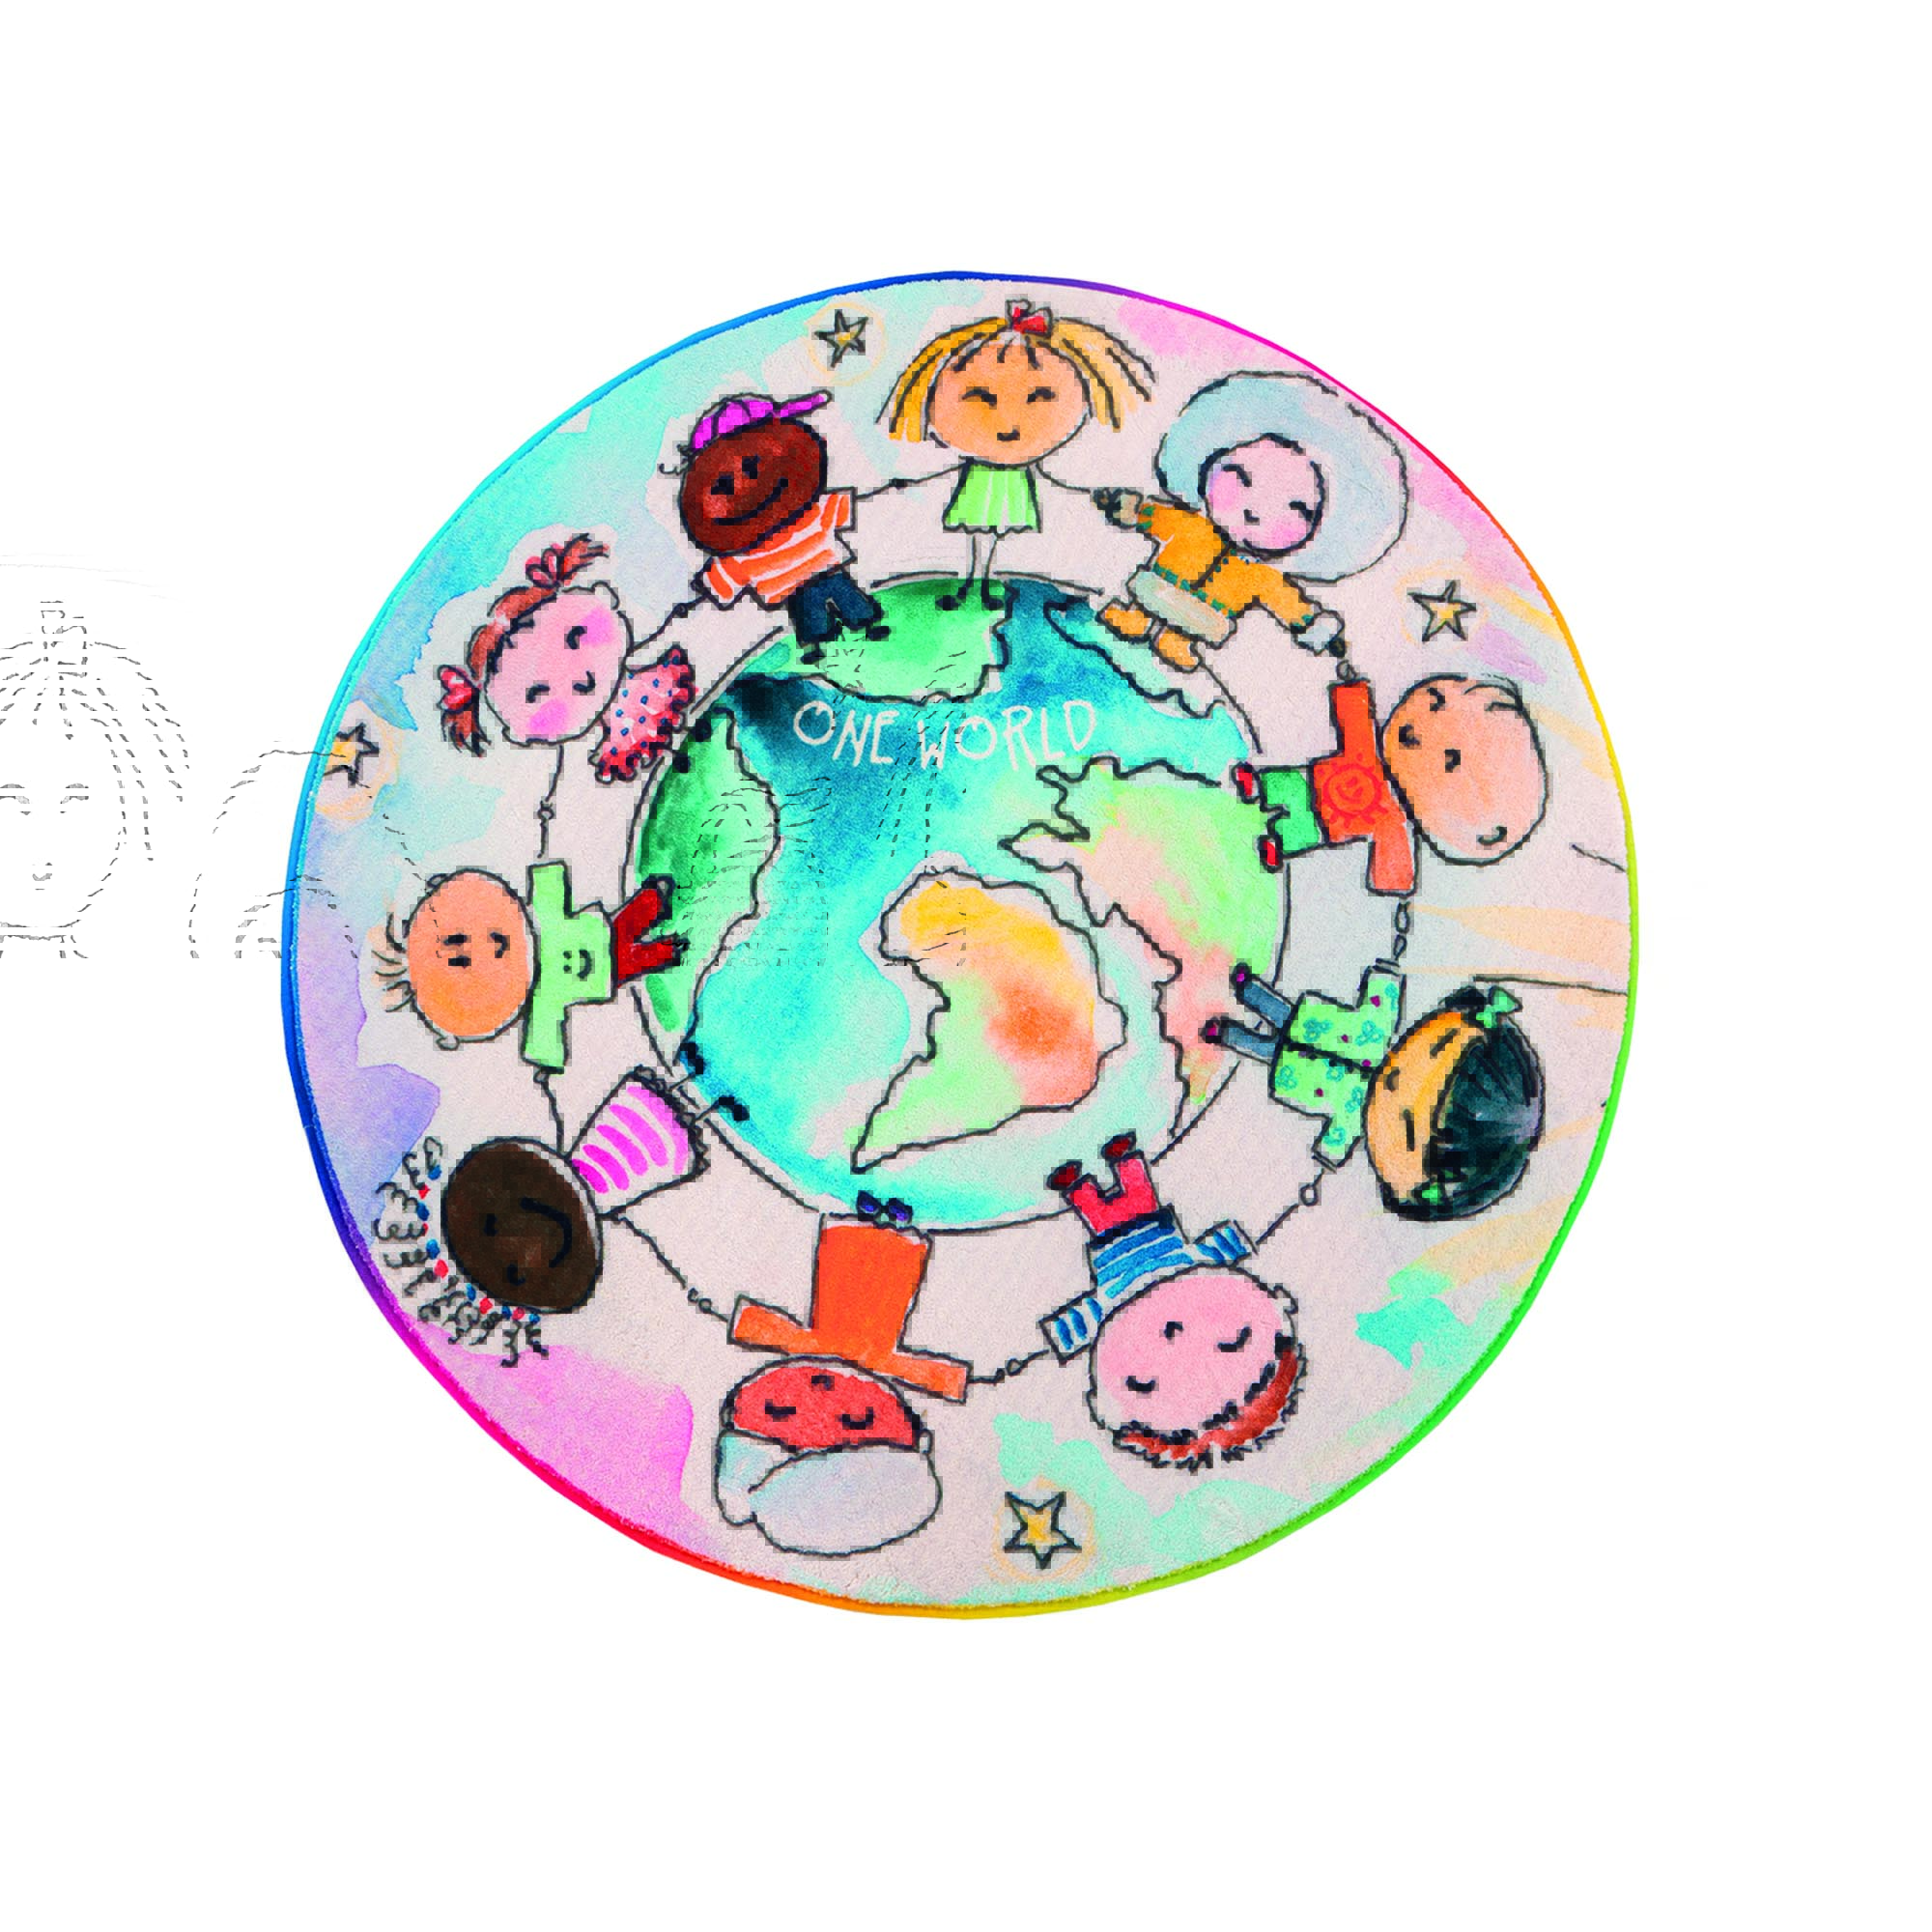 Mein Juno World-Teppich multicolor Obsession